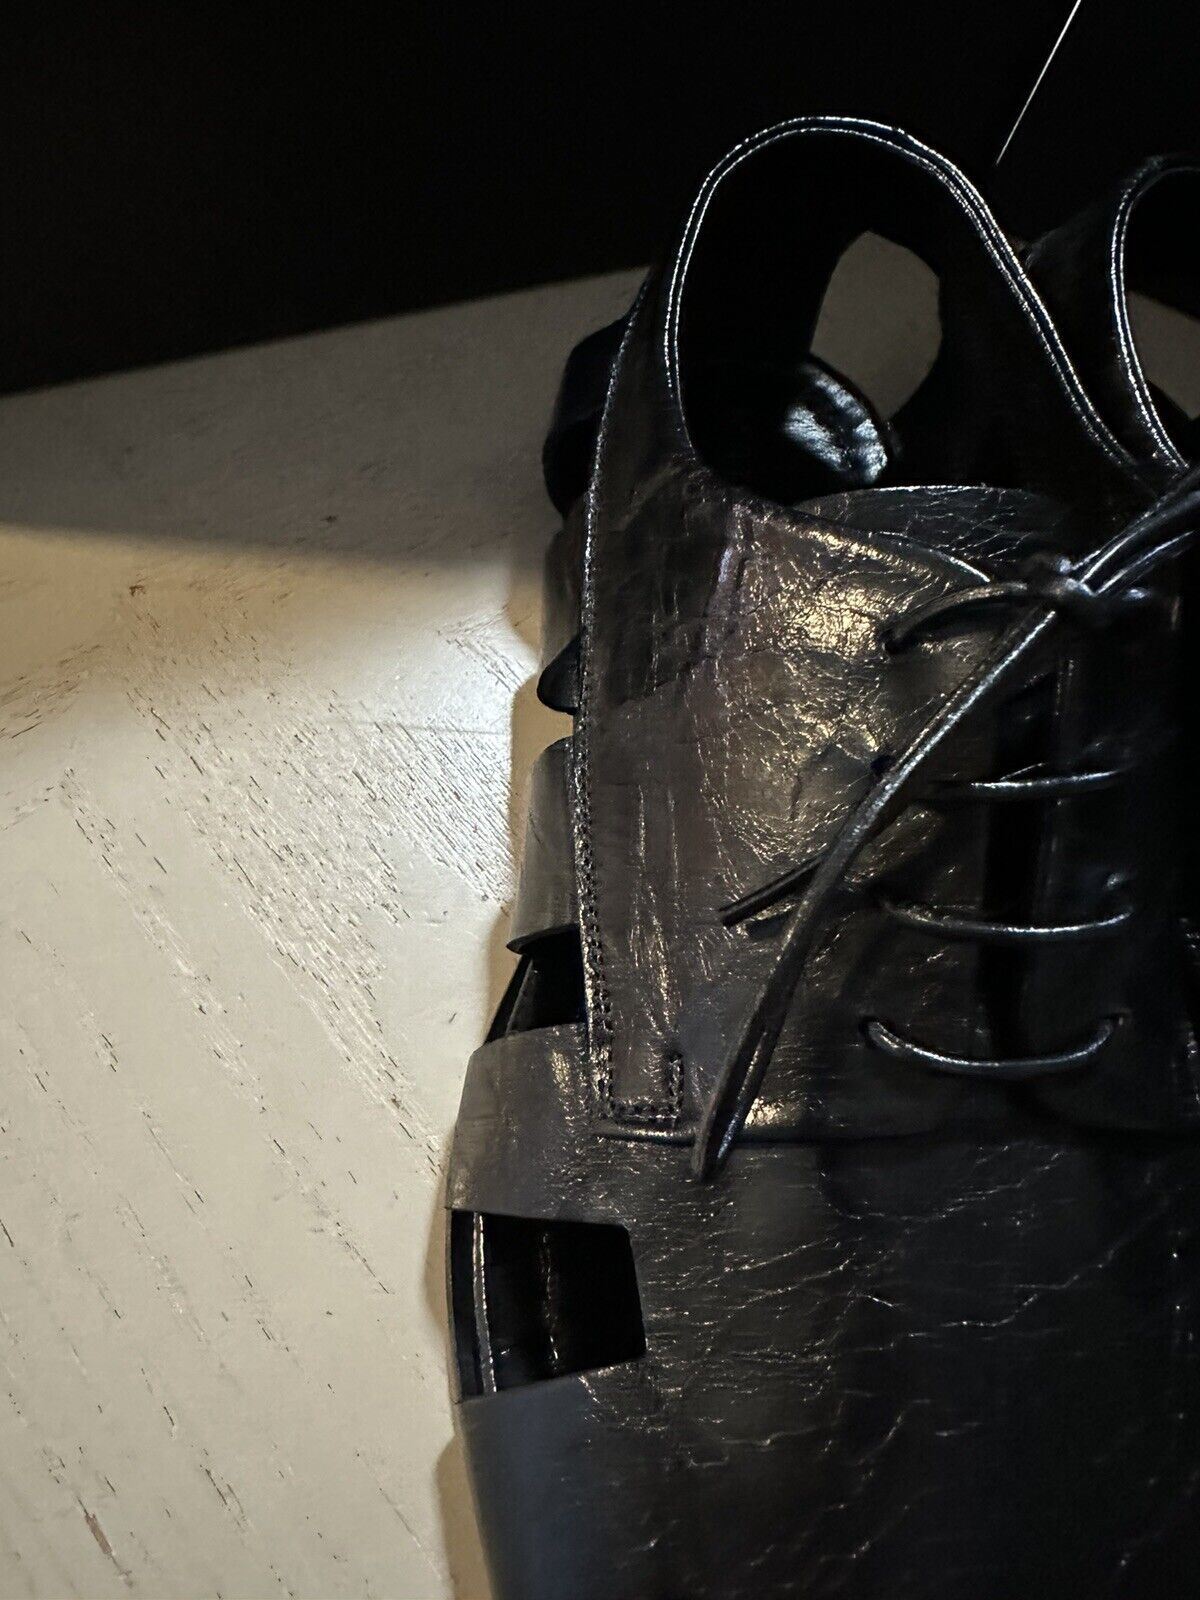 СИБ 890 долларов США Bottega Venetta Мужские легкие кожаные сандалии класса люкс черные 10,5 США/43,5